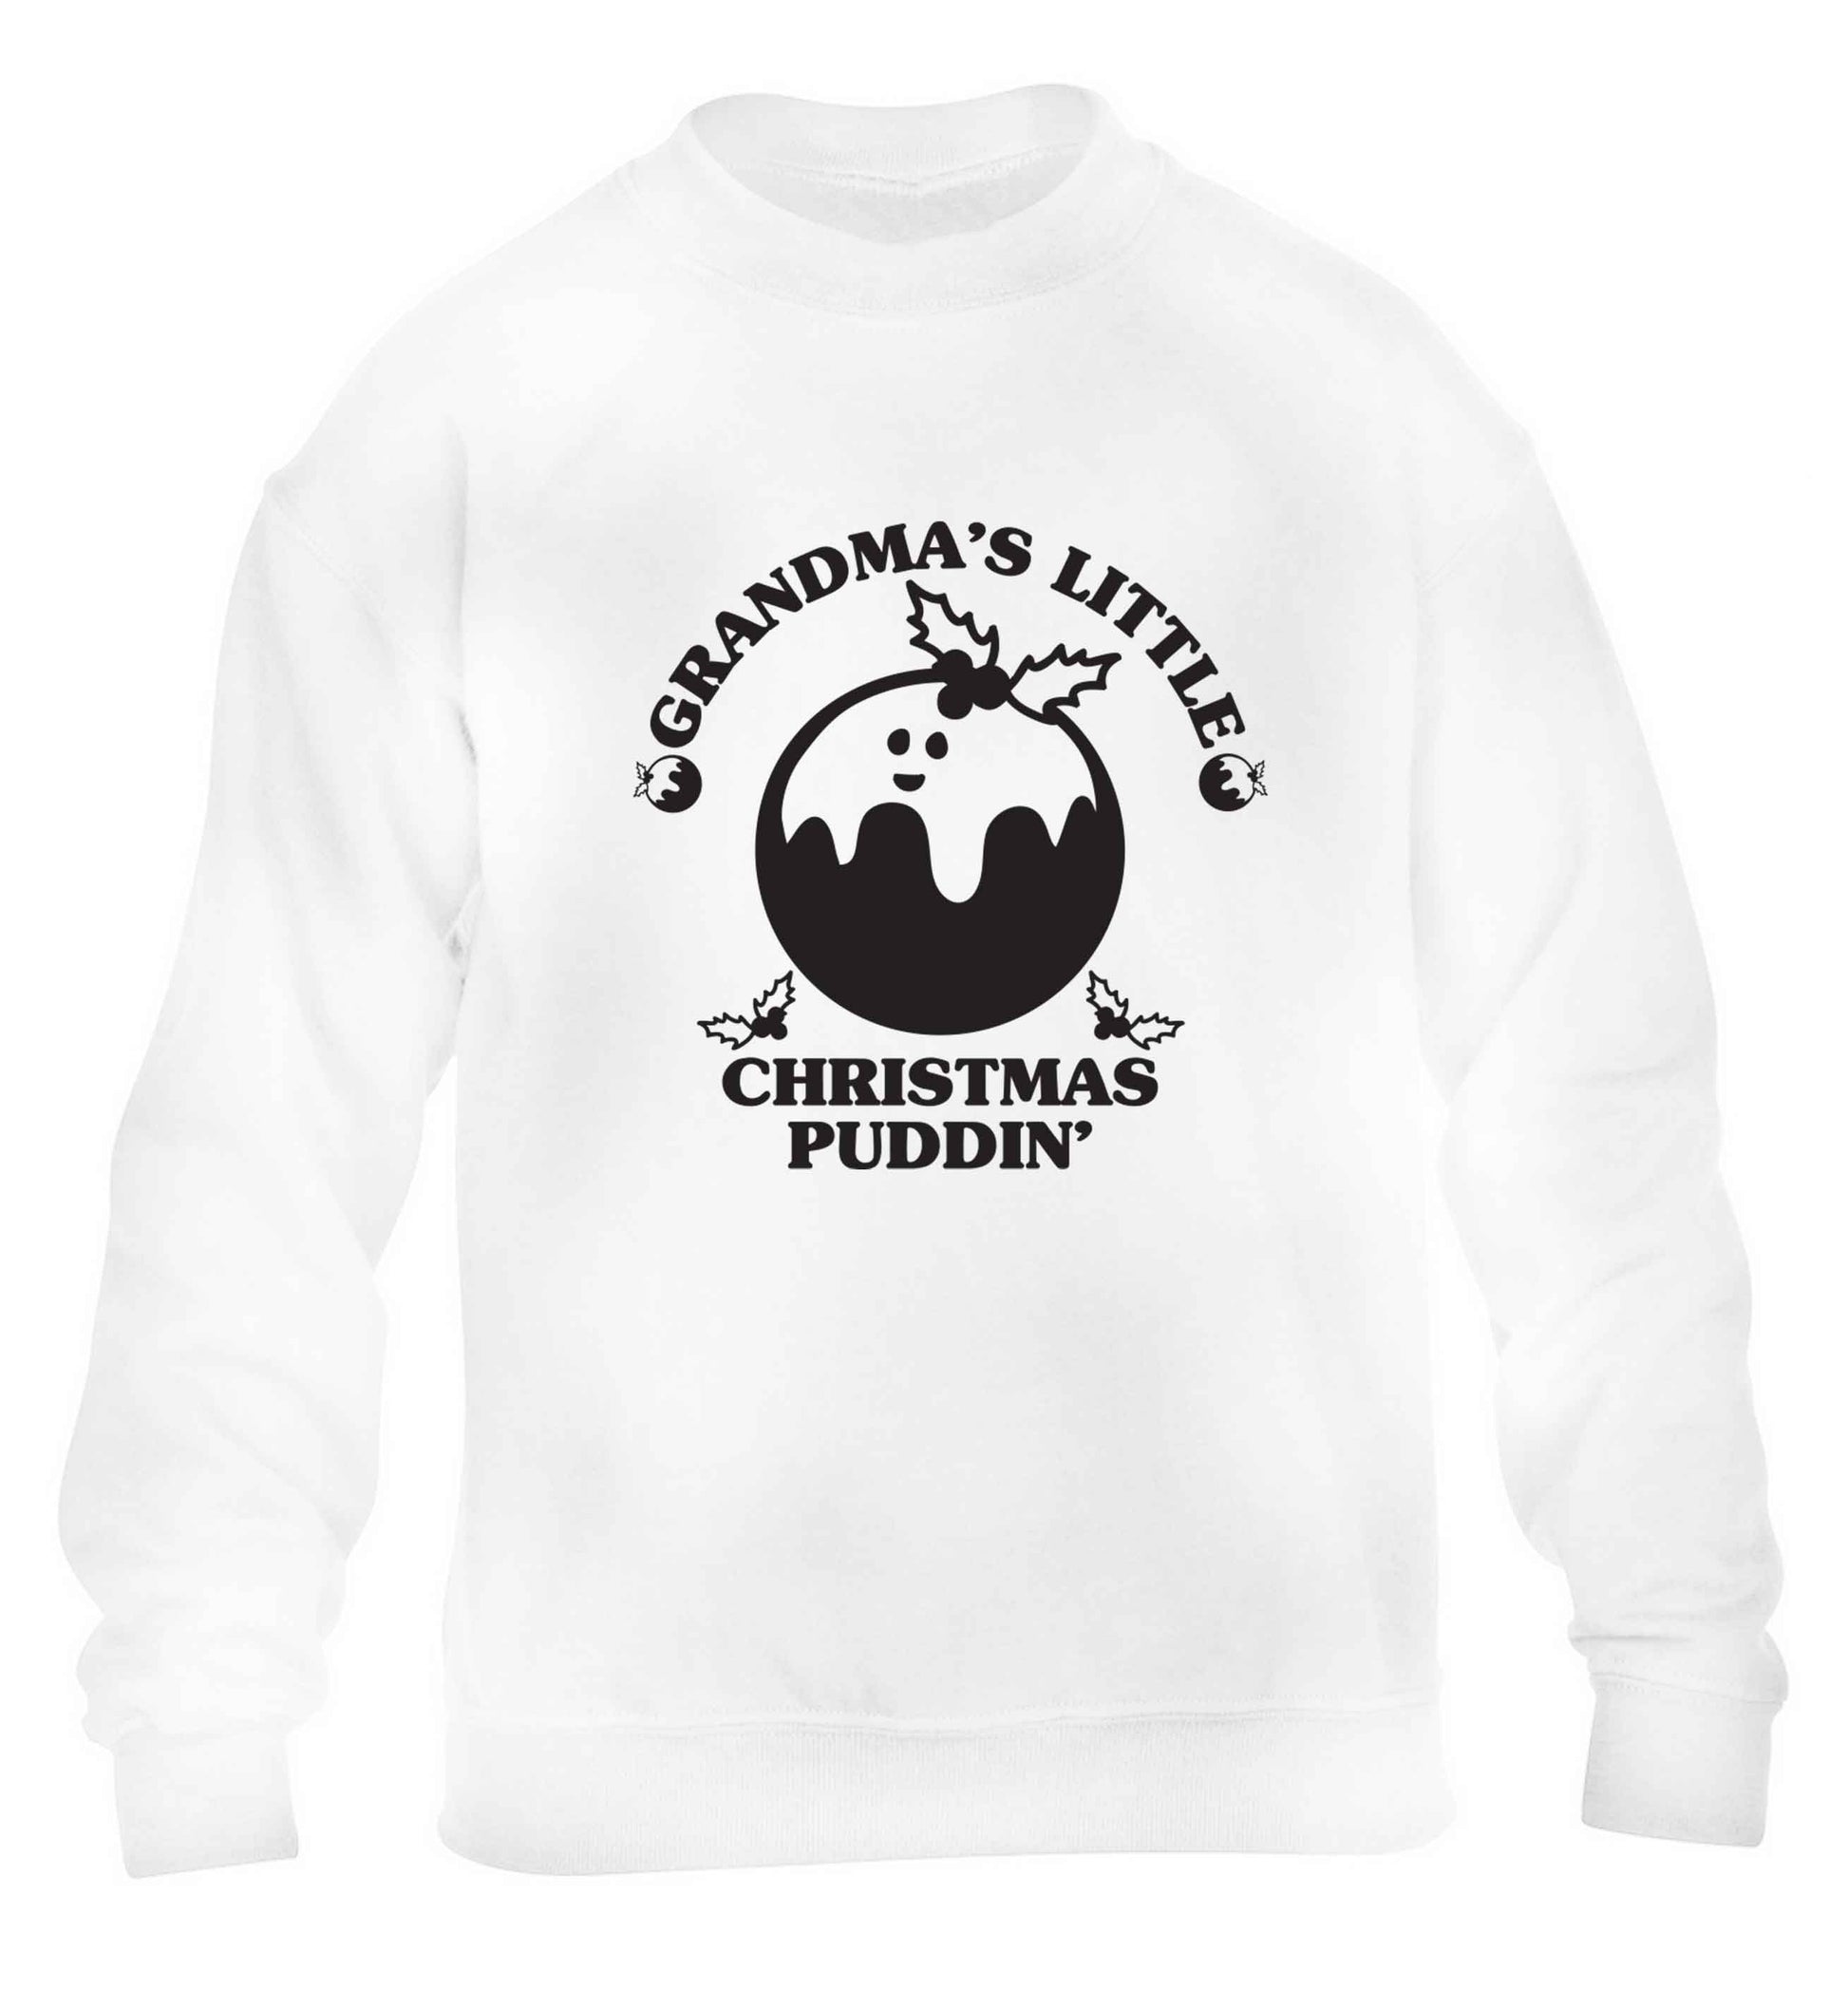 Grandma's little Christmas puddin' children's white sweater 12-13 Years